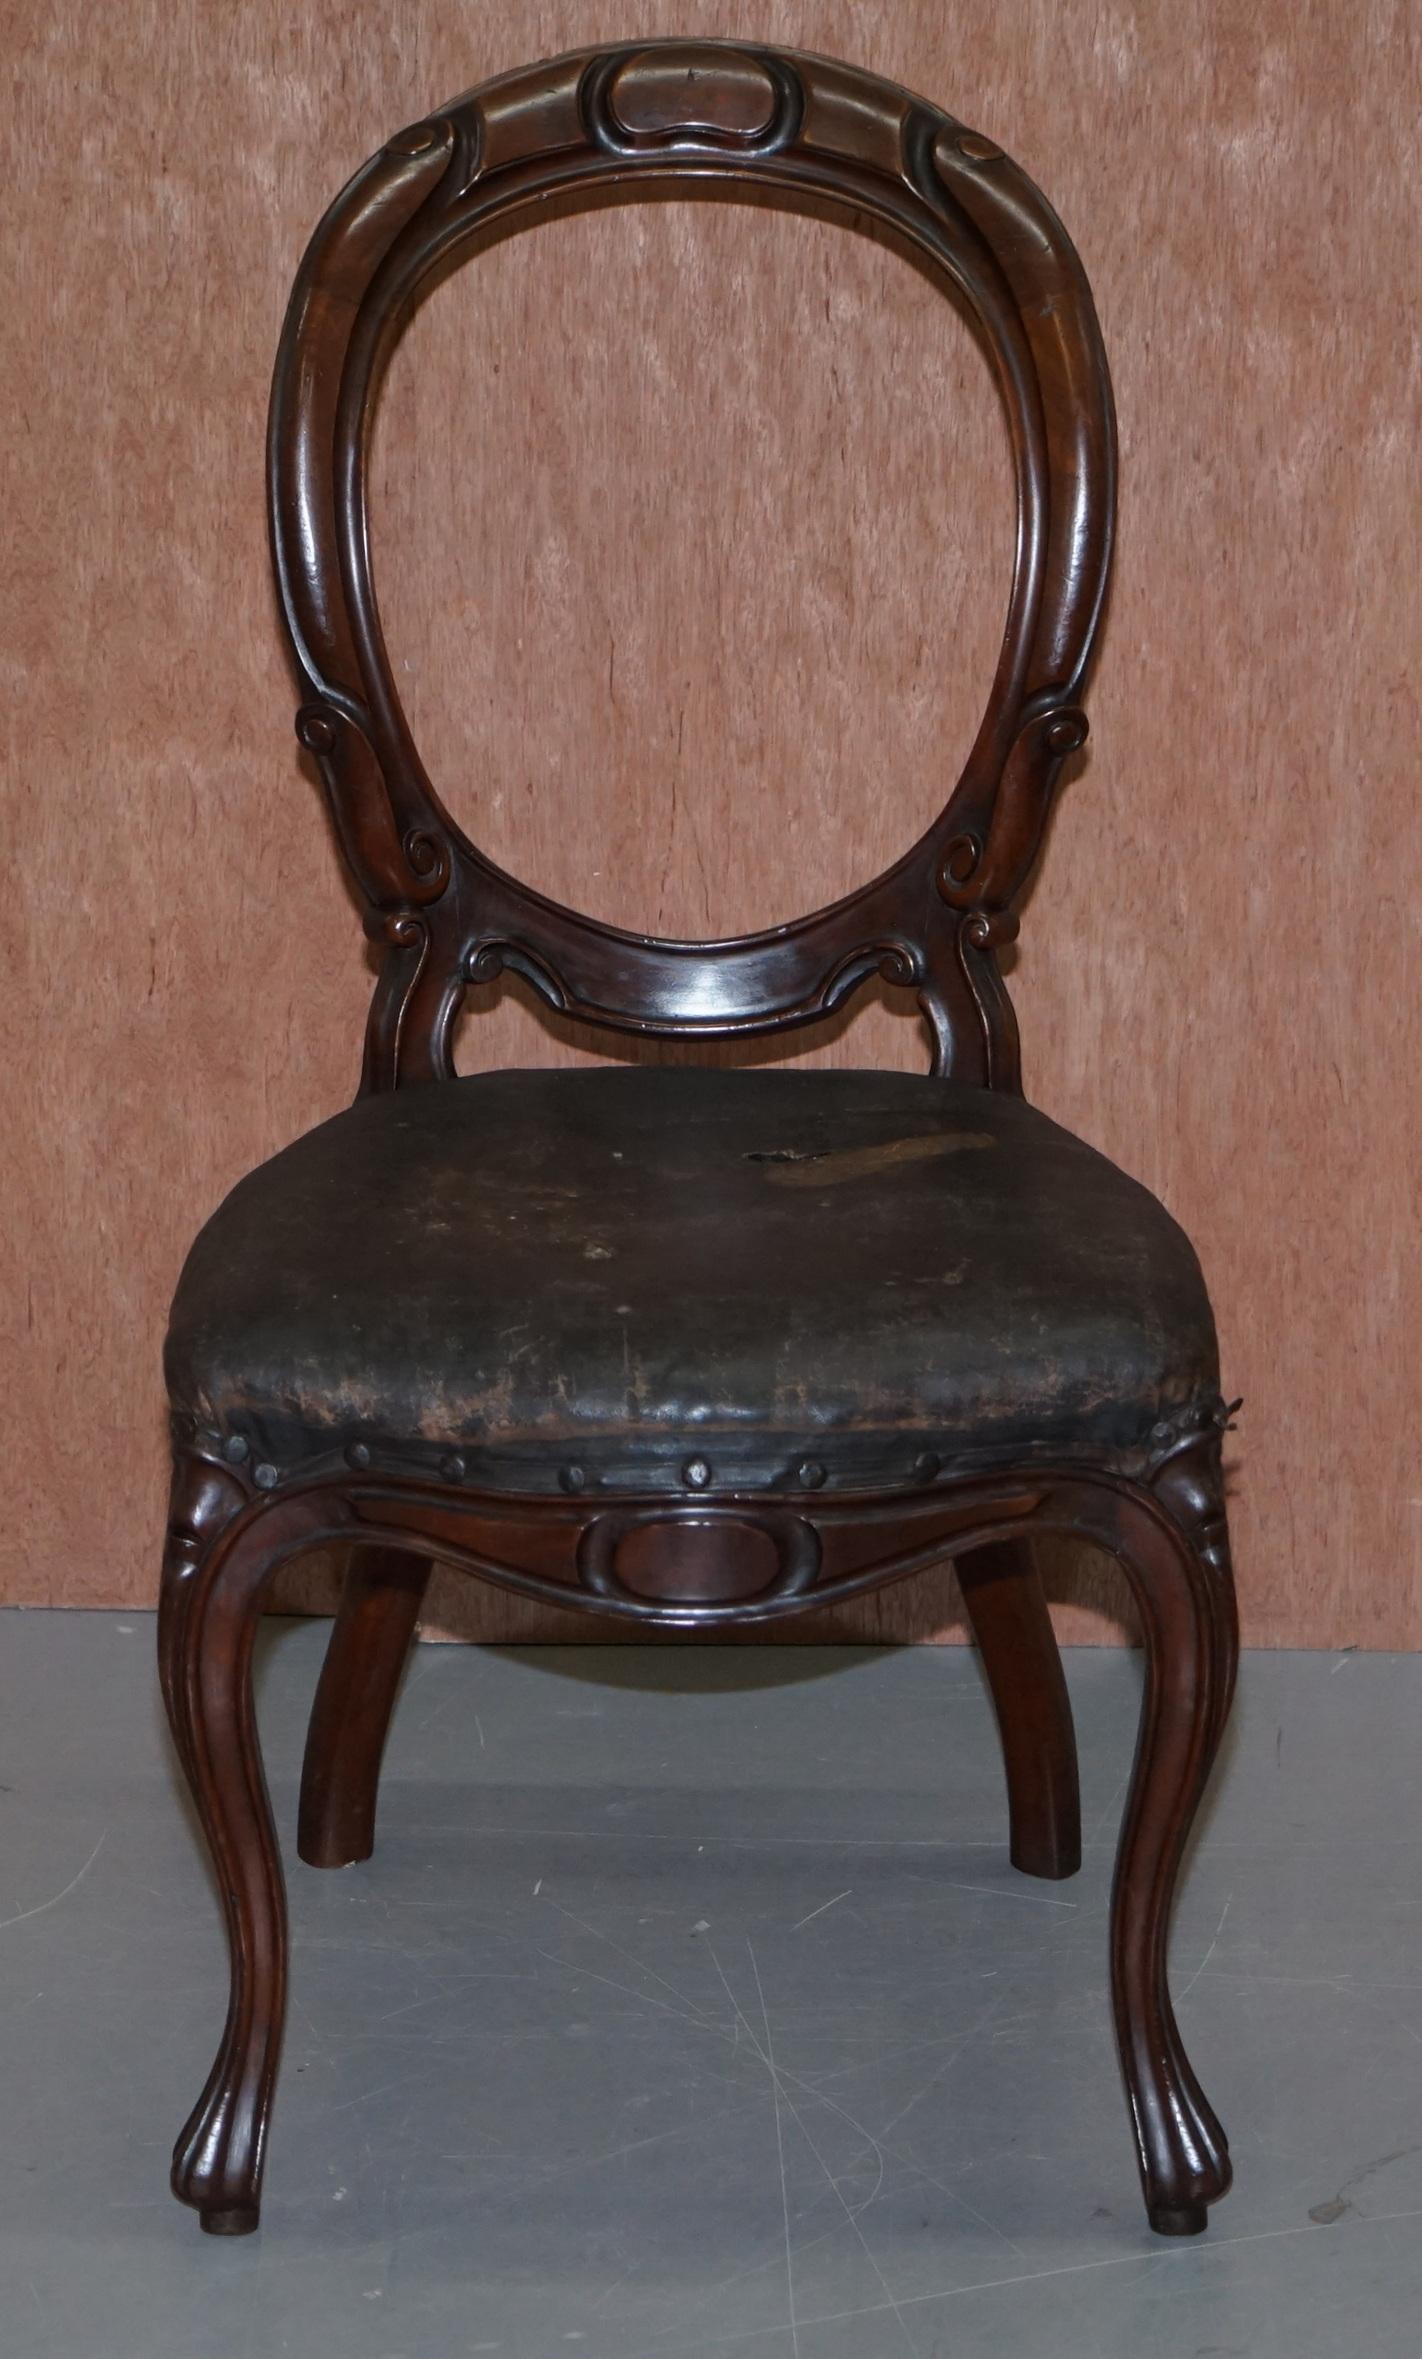 Wir freuen uns, diesen handgefertigten originalen viktorianischen Löffel- oder Medaillonrücken-Esszimmerstuhl mit Originalpolsterung zum Verkauf anbieten zu können

Ein gut aussehender, gut gemachter und dekorativer Stuhl. Der Rahmen ist erhaben,